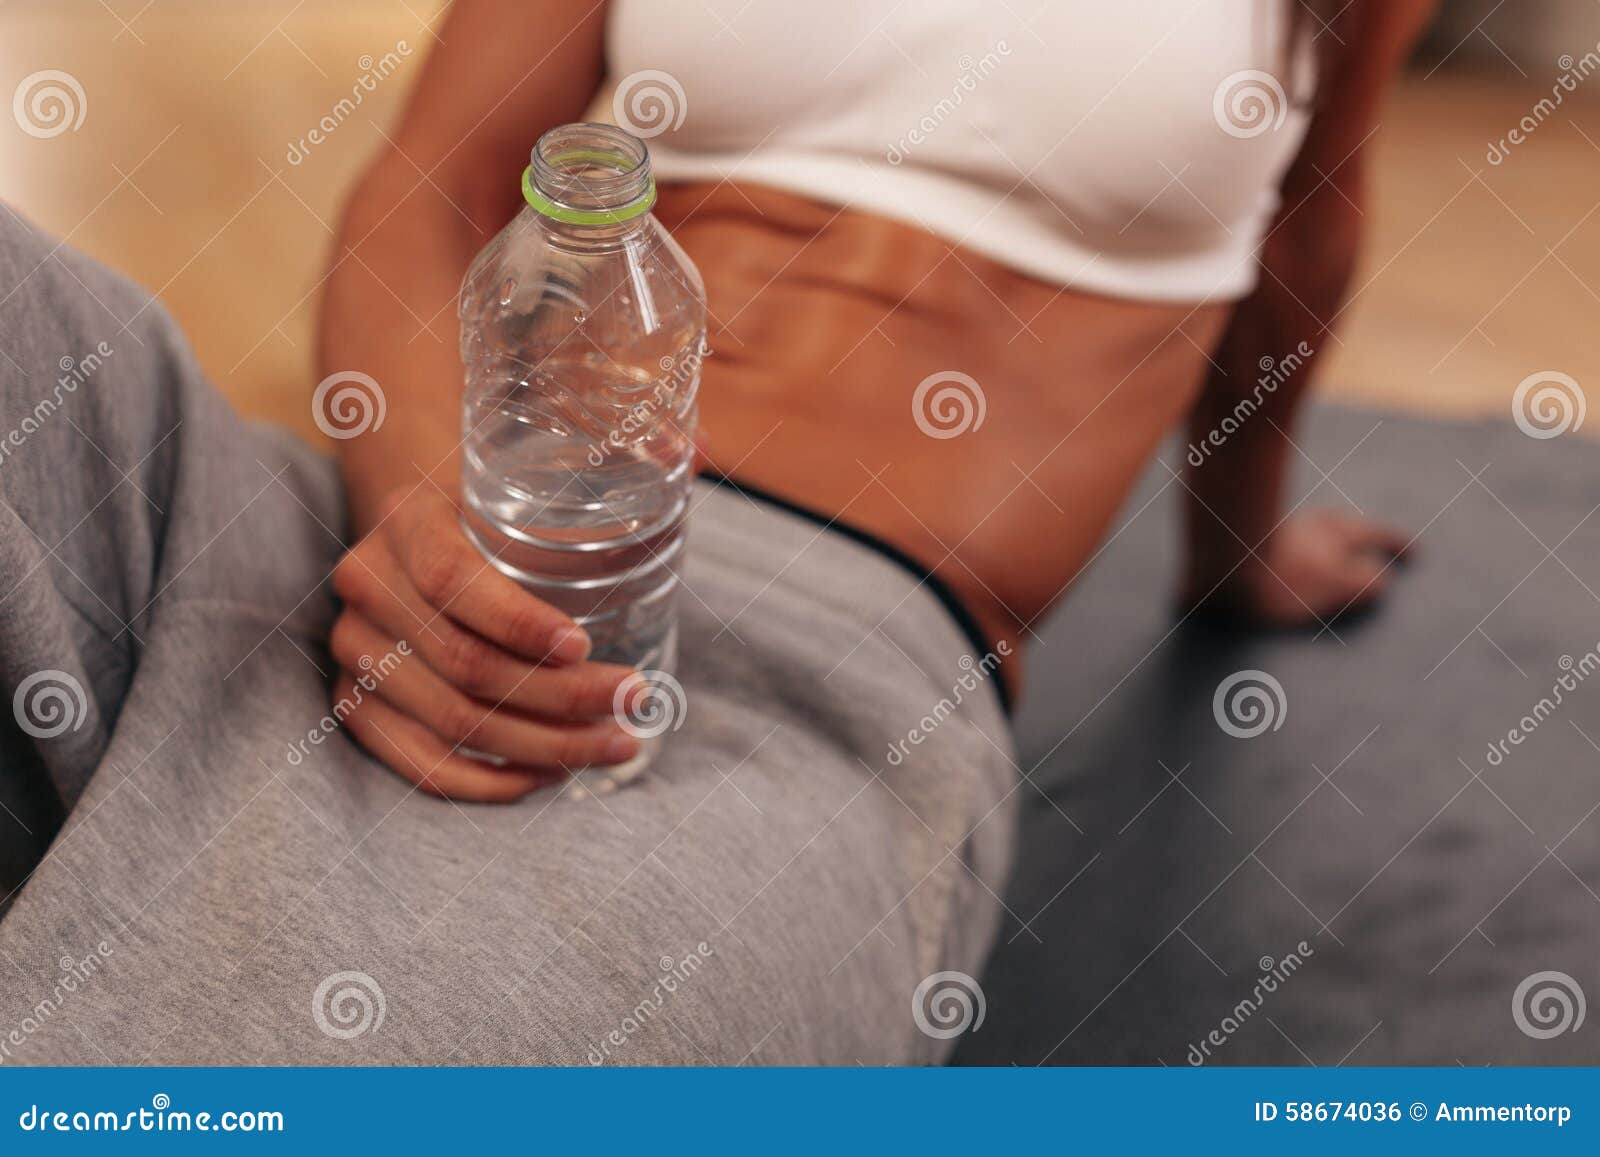 Бутылка воды при цистите. Бутылка воды в руке. Бутылка воды в руках в спортзал реальные. Женщина держит бутылку с водой. Бутылка для спорта.